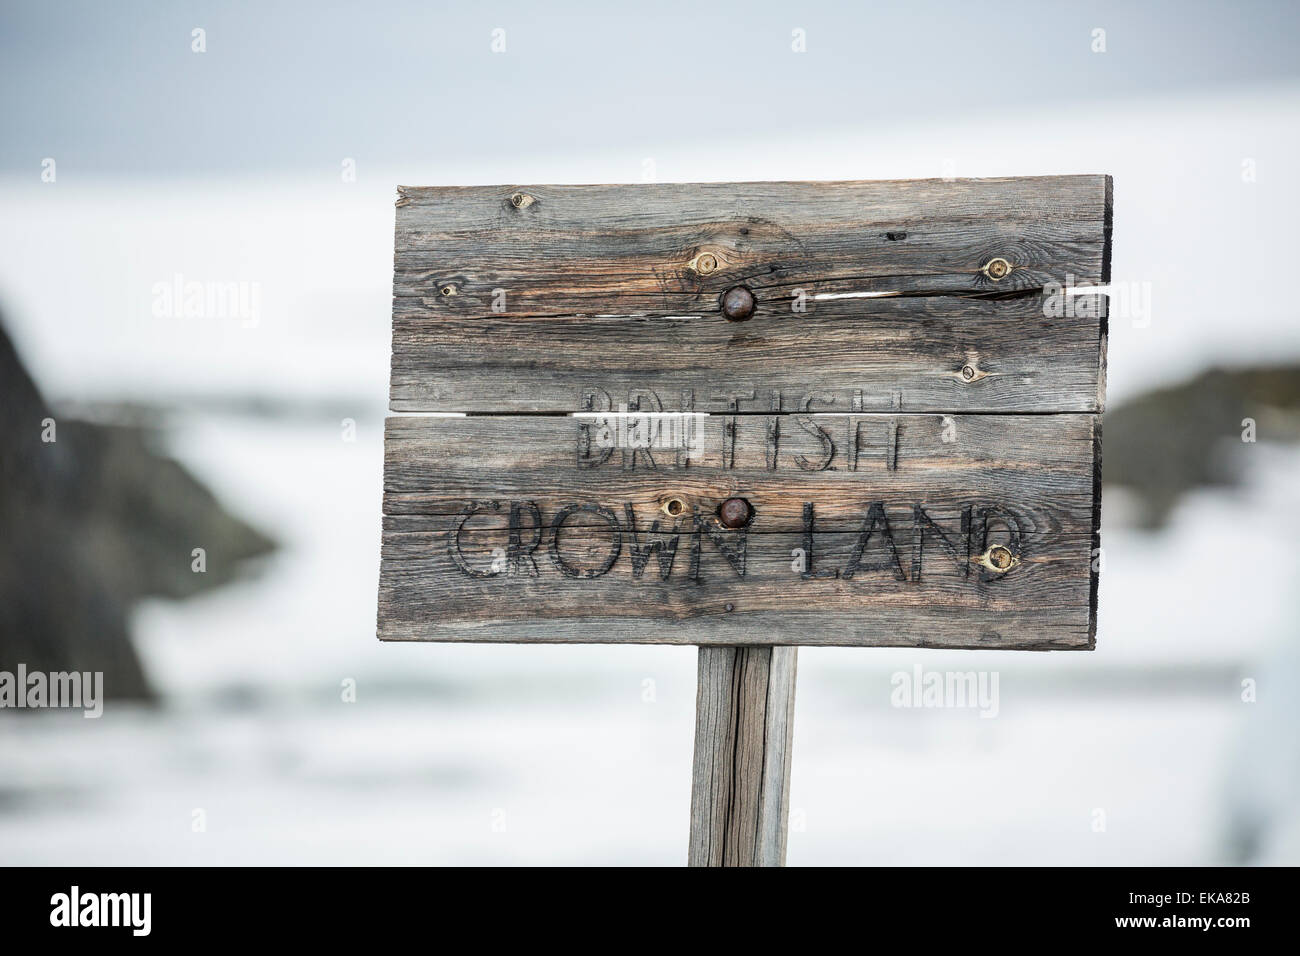 Une terre de la Couronne britannique de bois rares, signe Wordie House, l'île d'hiver, l'Antarctique Banque D'Images